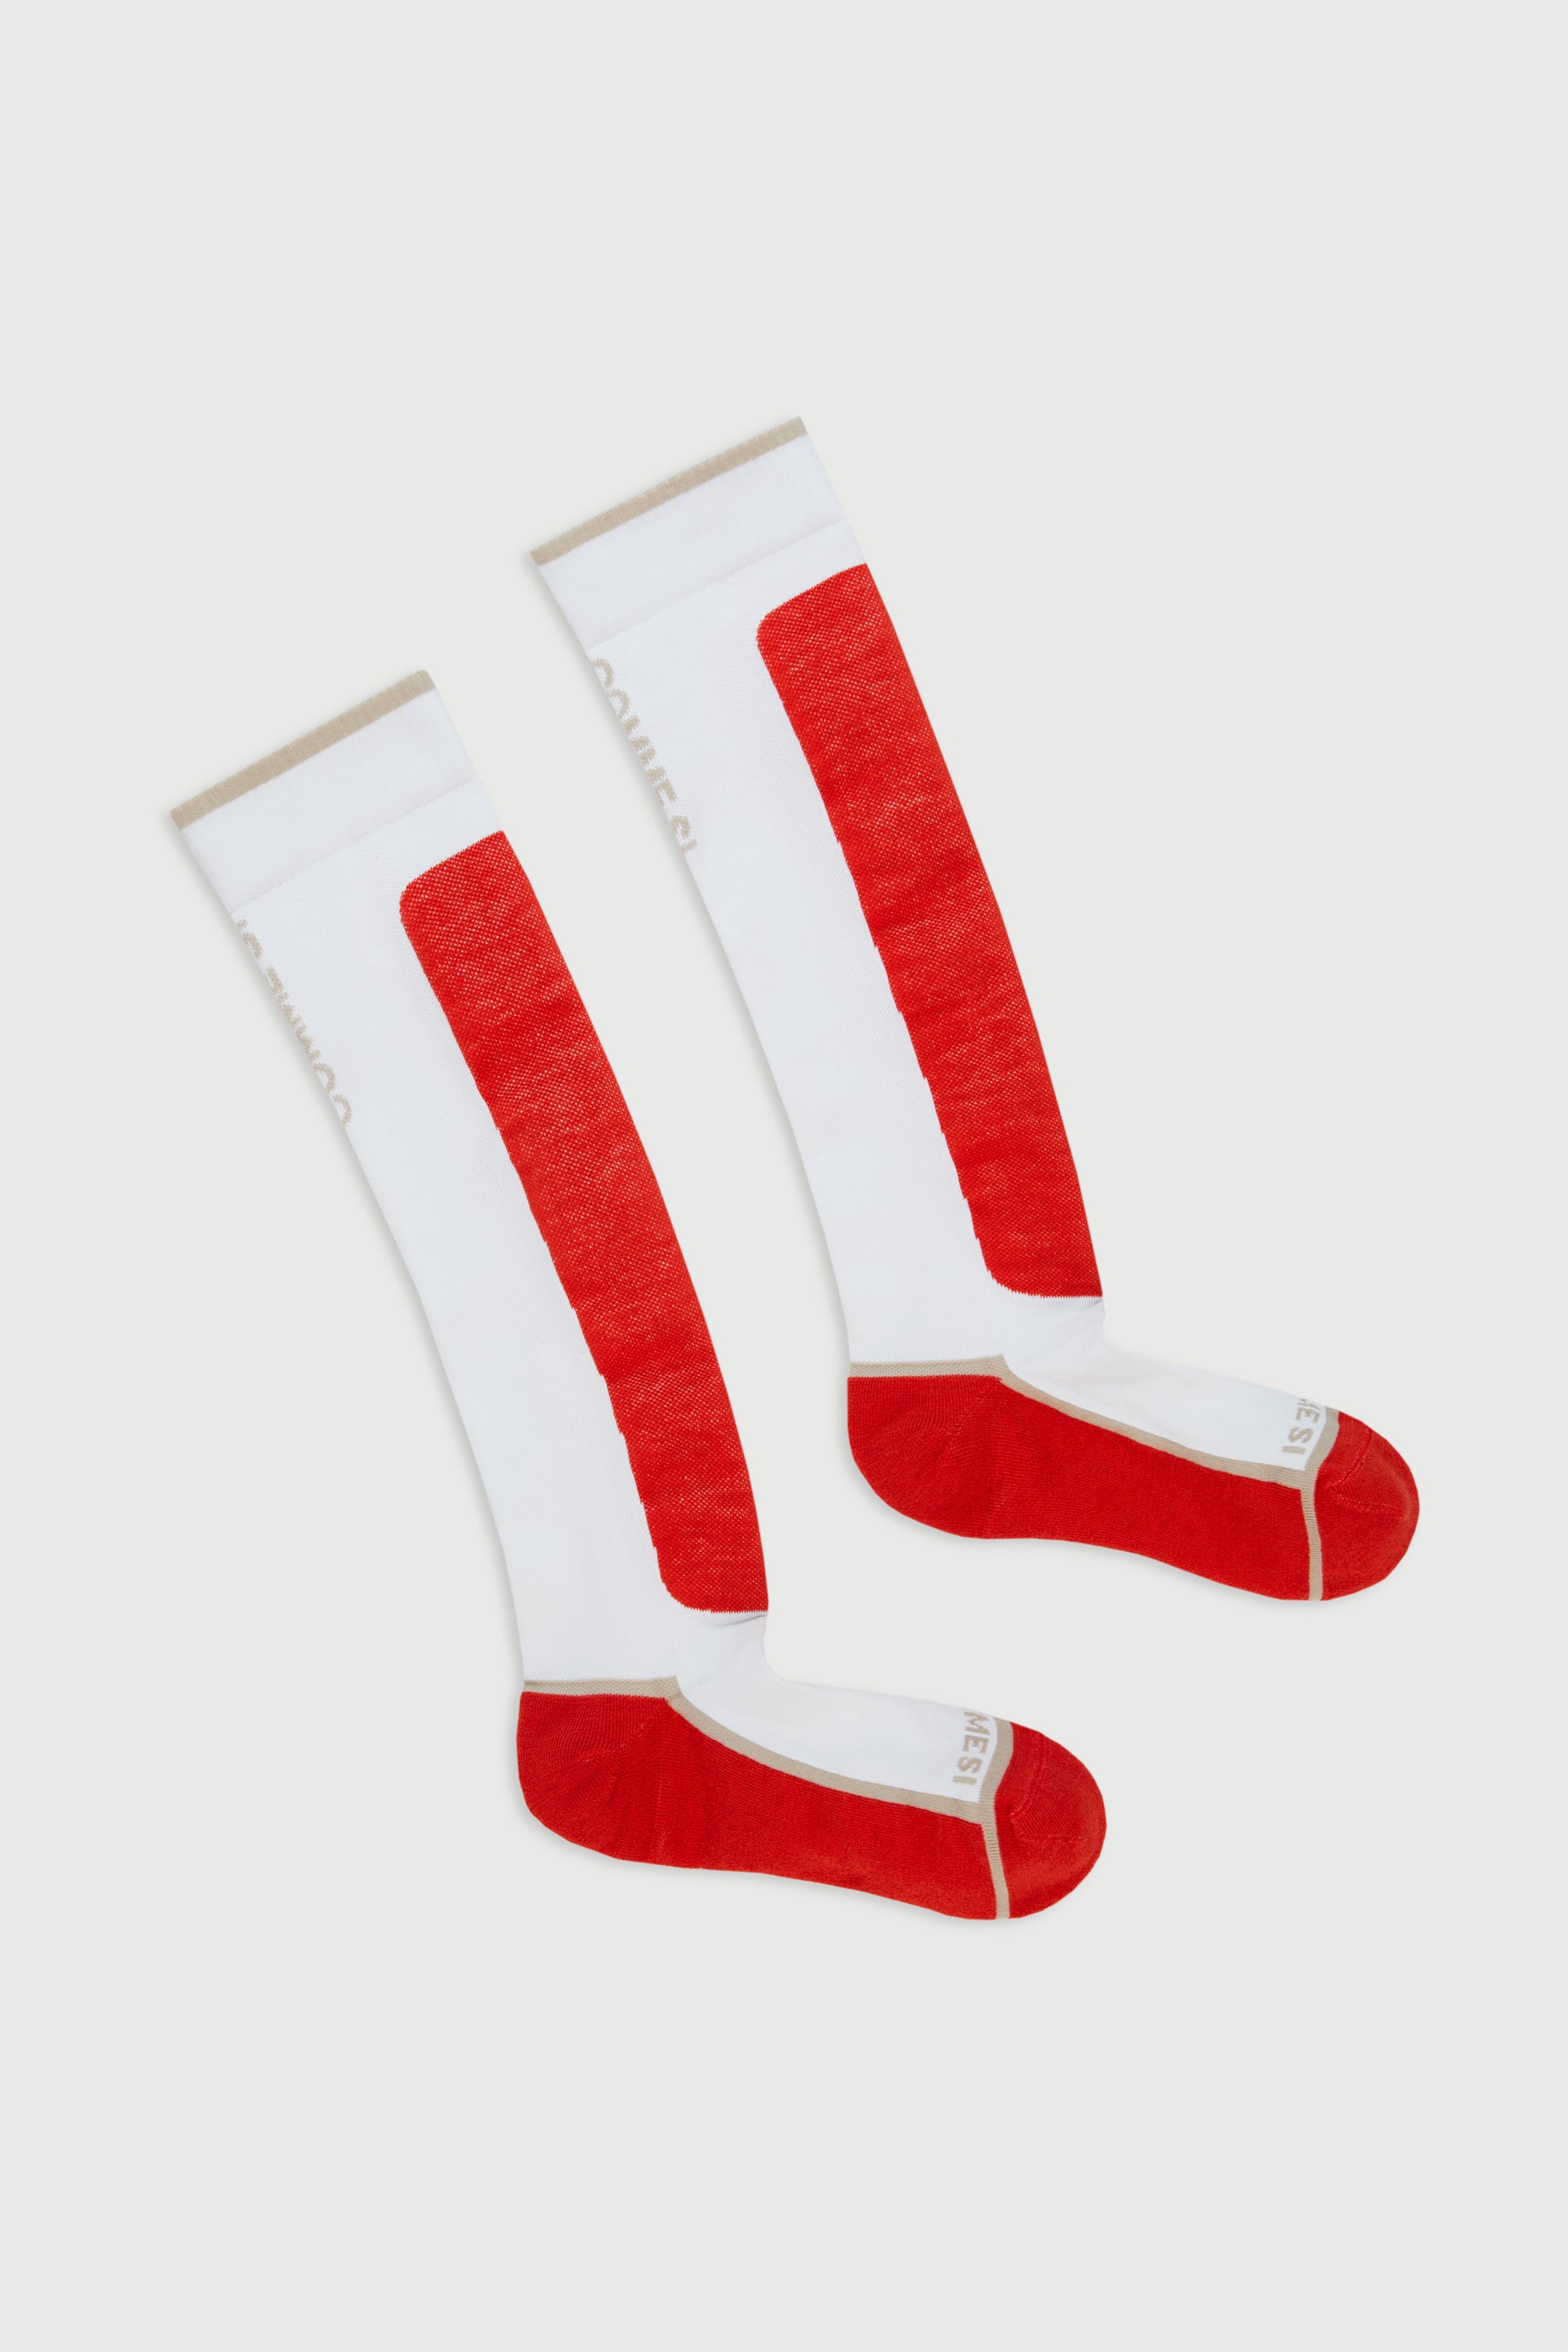 Merino wool ski socks, Comme Si ski socks